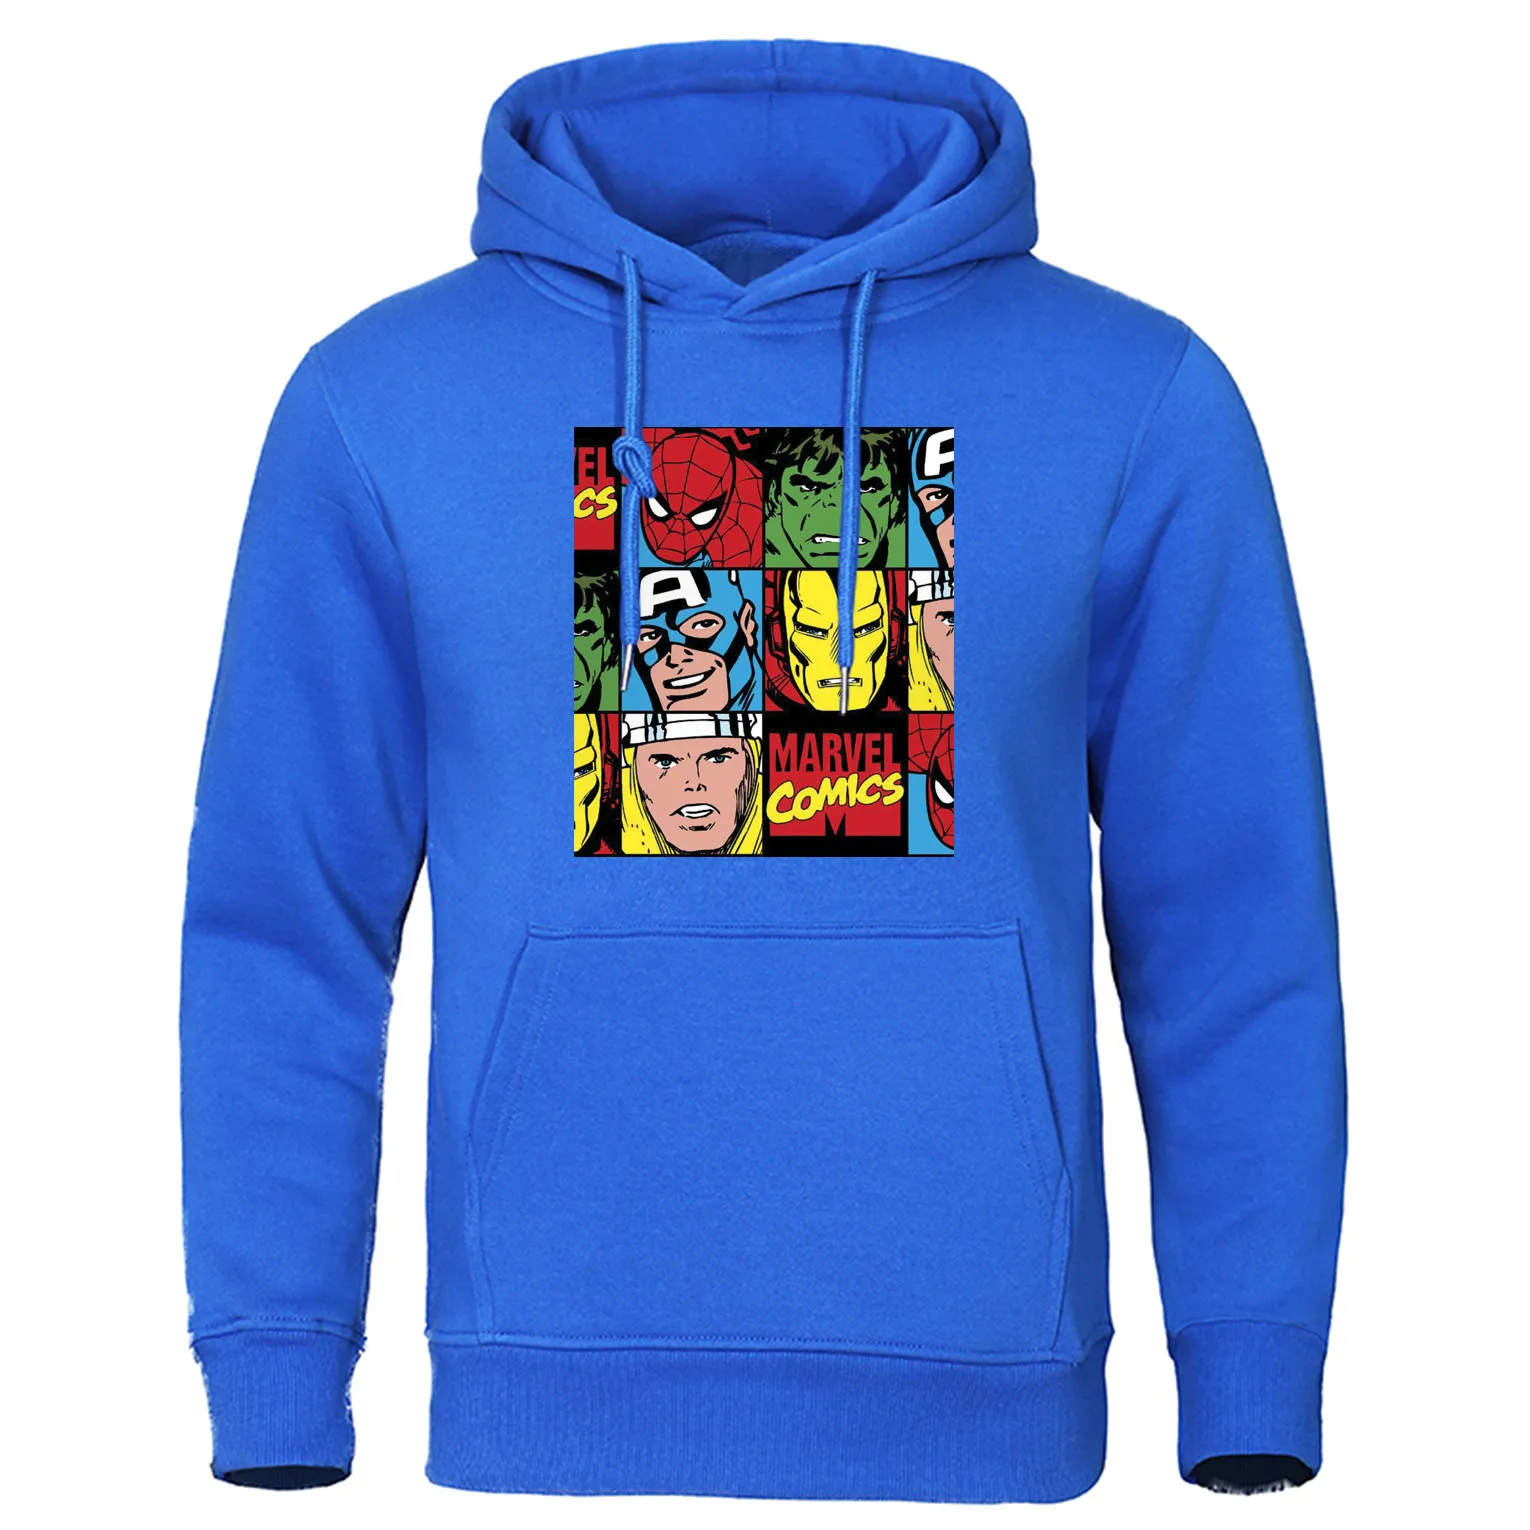 Модные кофты с капюшоном "Marvel", мужской осенний пуловер, толстовка супергероя Мстителей, высококачественный спортивный костюм, Повседневная Уличная толстовка с капюшоном